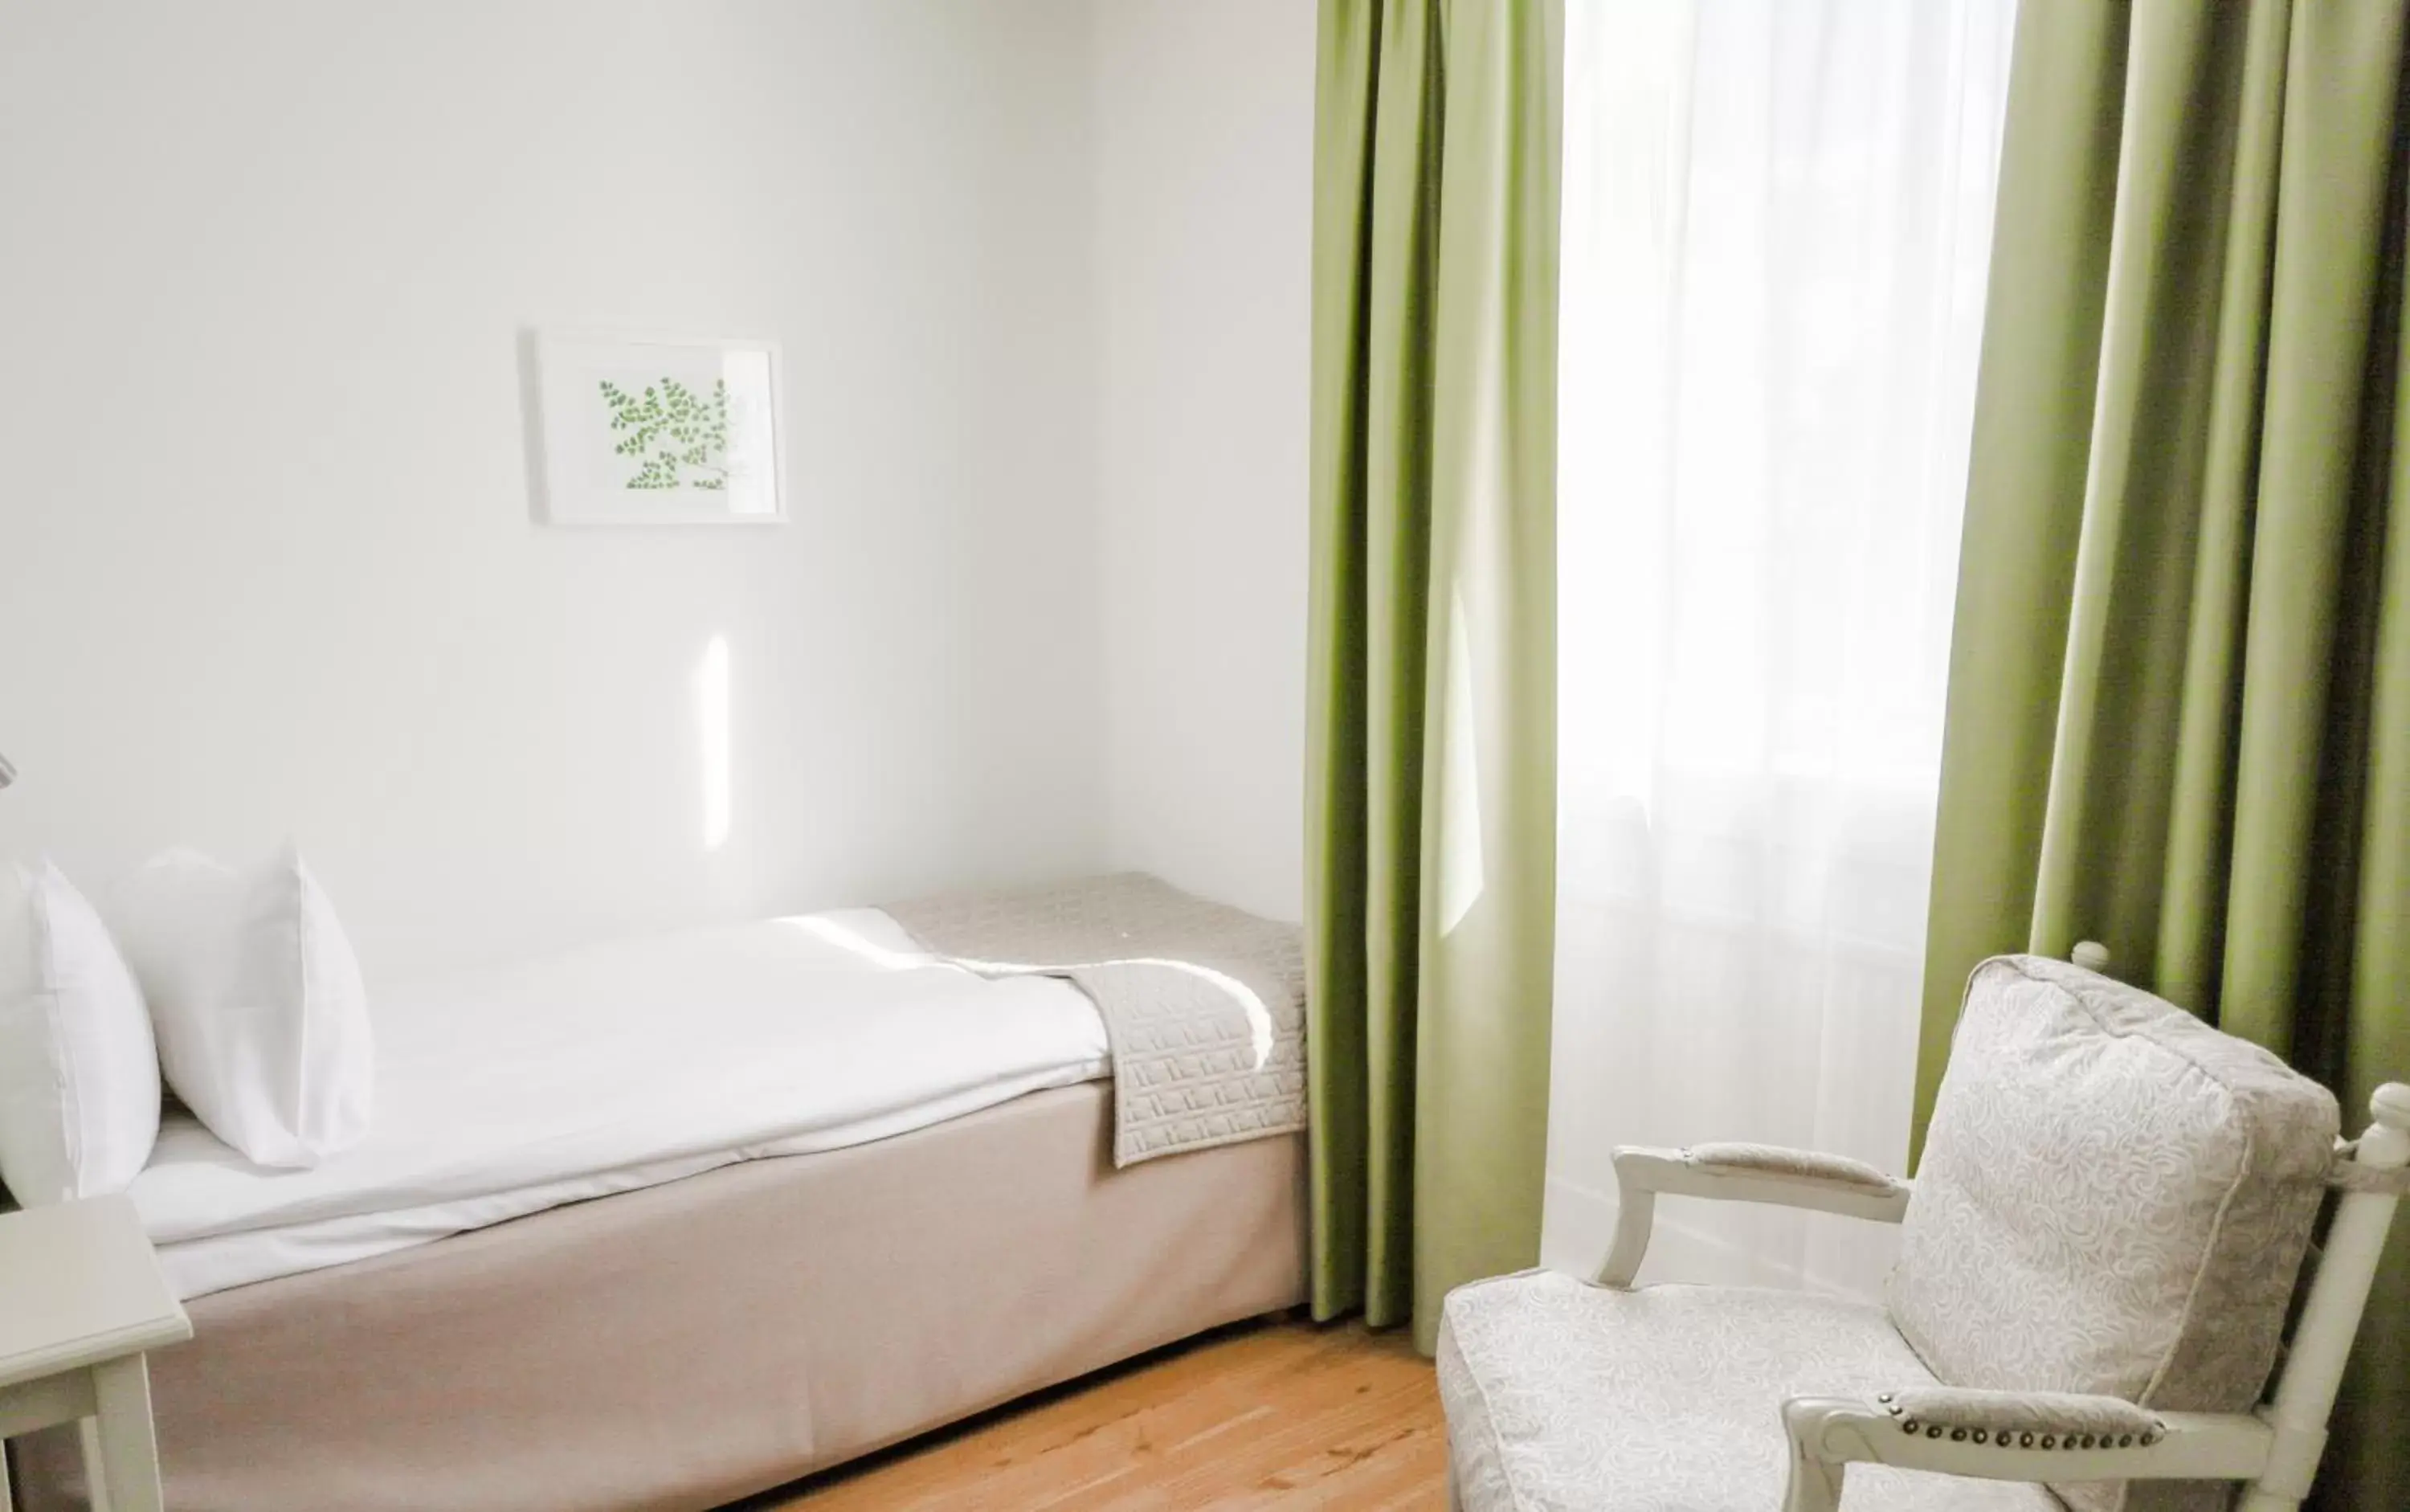 Bedroom, Bed in Blommenhof Hotel